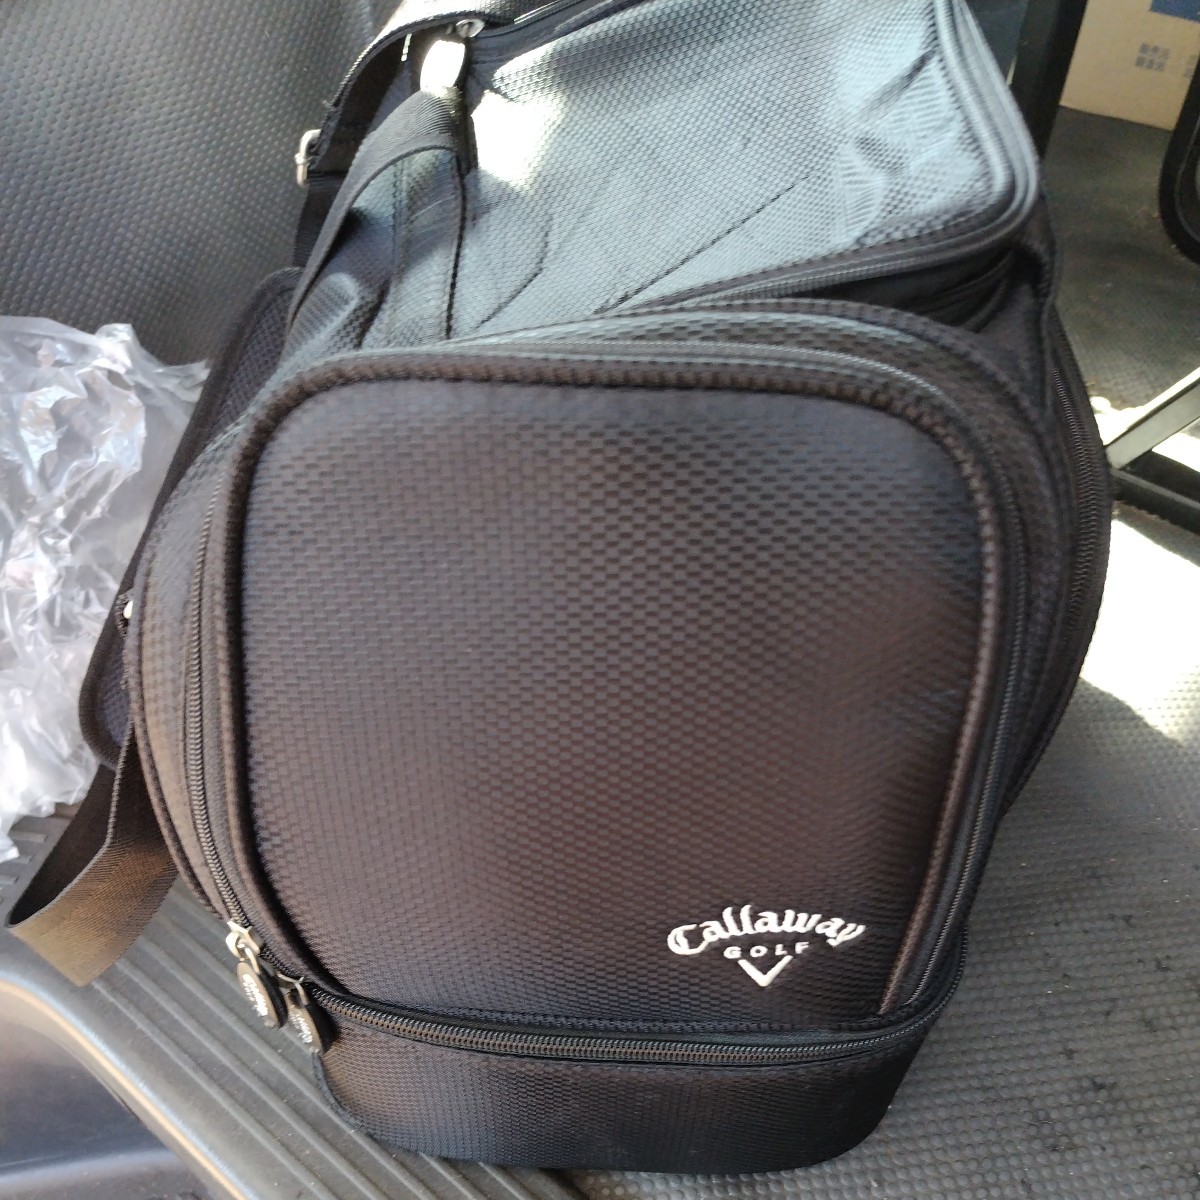  Callaway Boston bag 